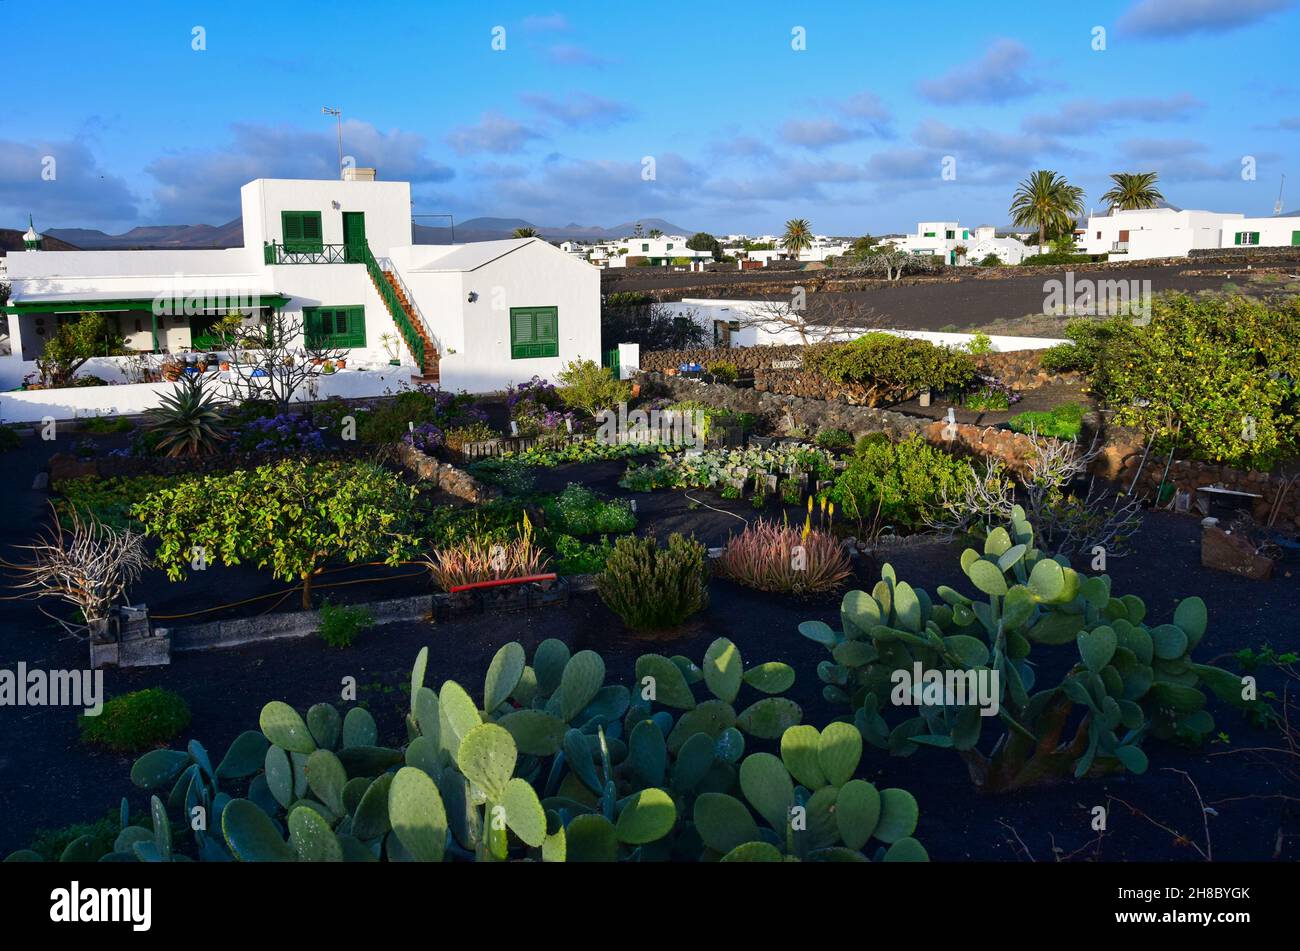 La piccola città di Yaiza a Lanzarote. Una casa tipica con un giardino con un sacco di opuntie e altre piante. Isole Canarie, Spagna. Immagine presa dal pubblico Foto Stock